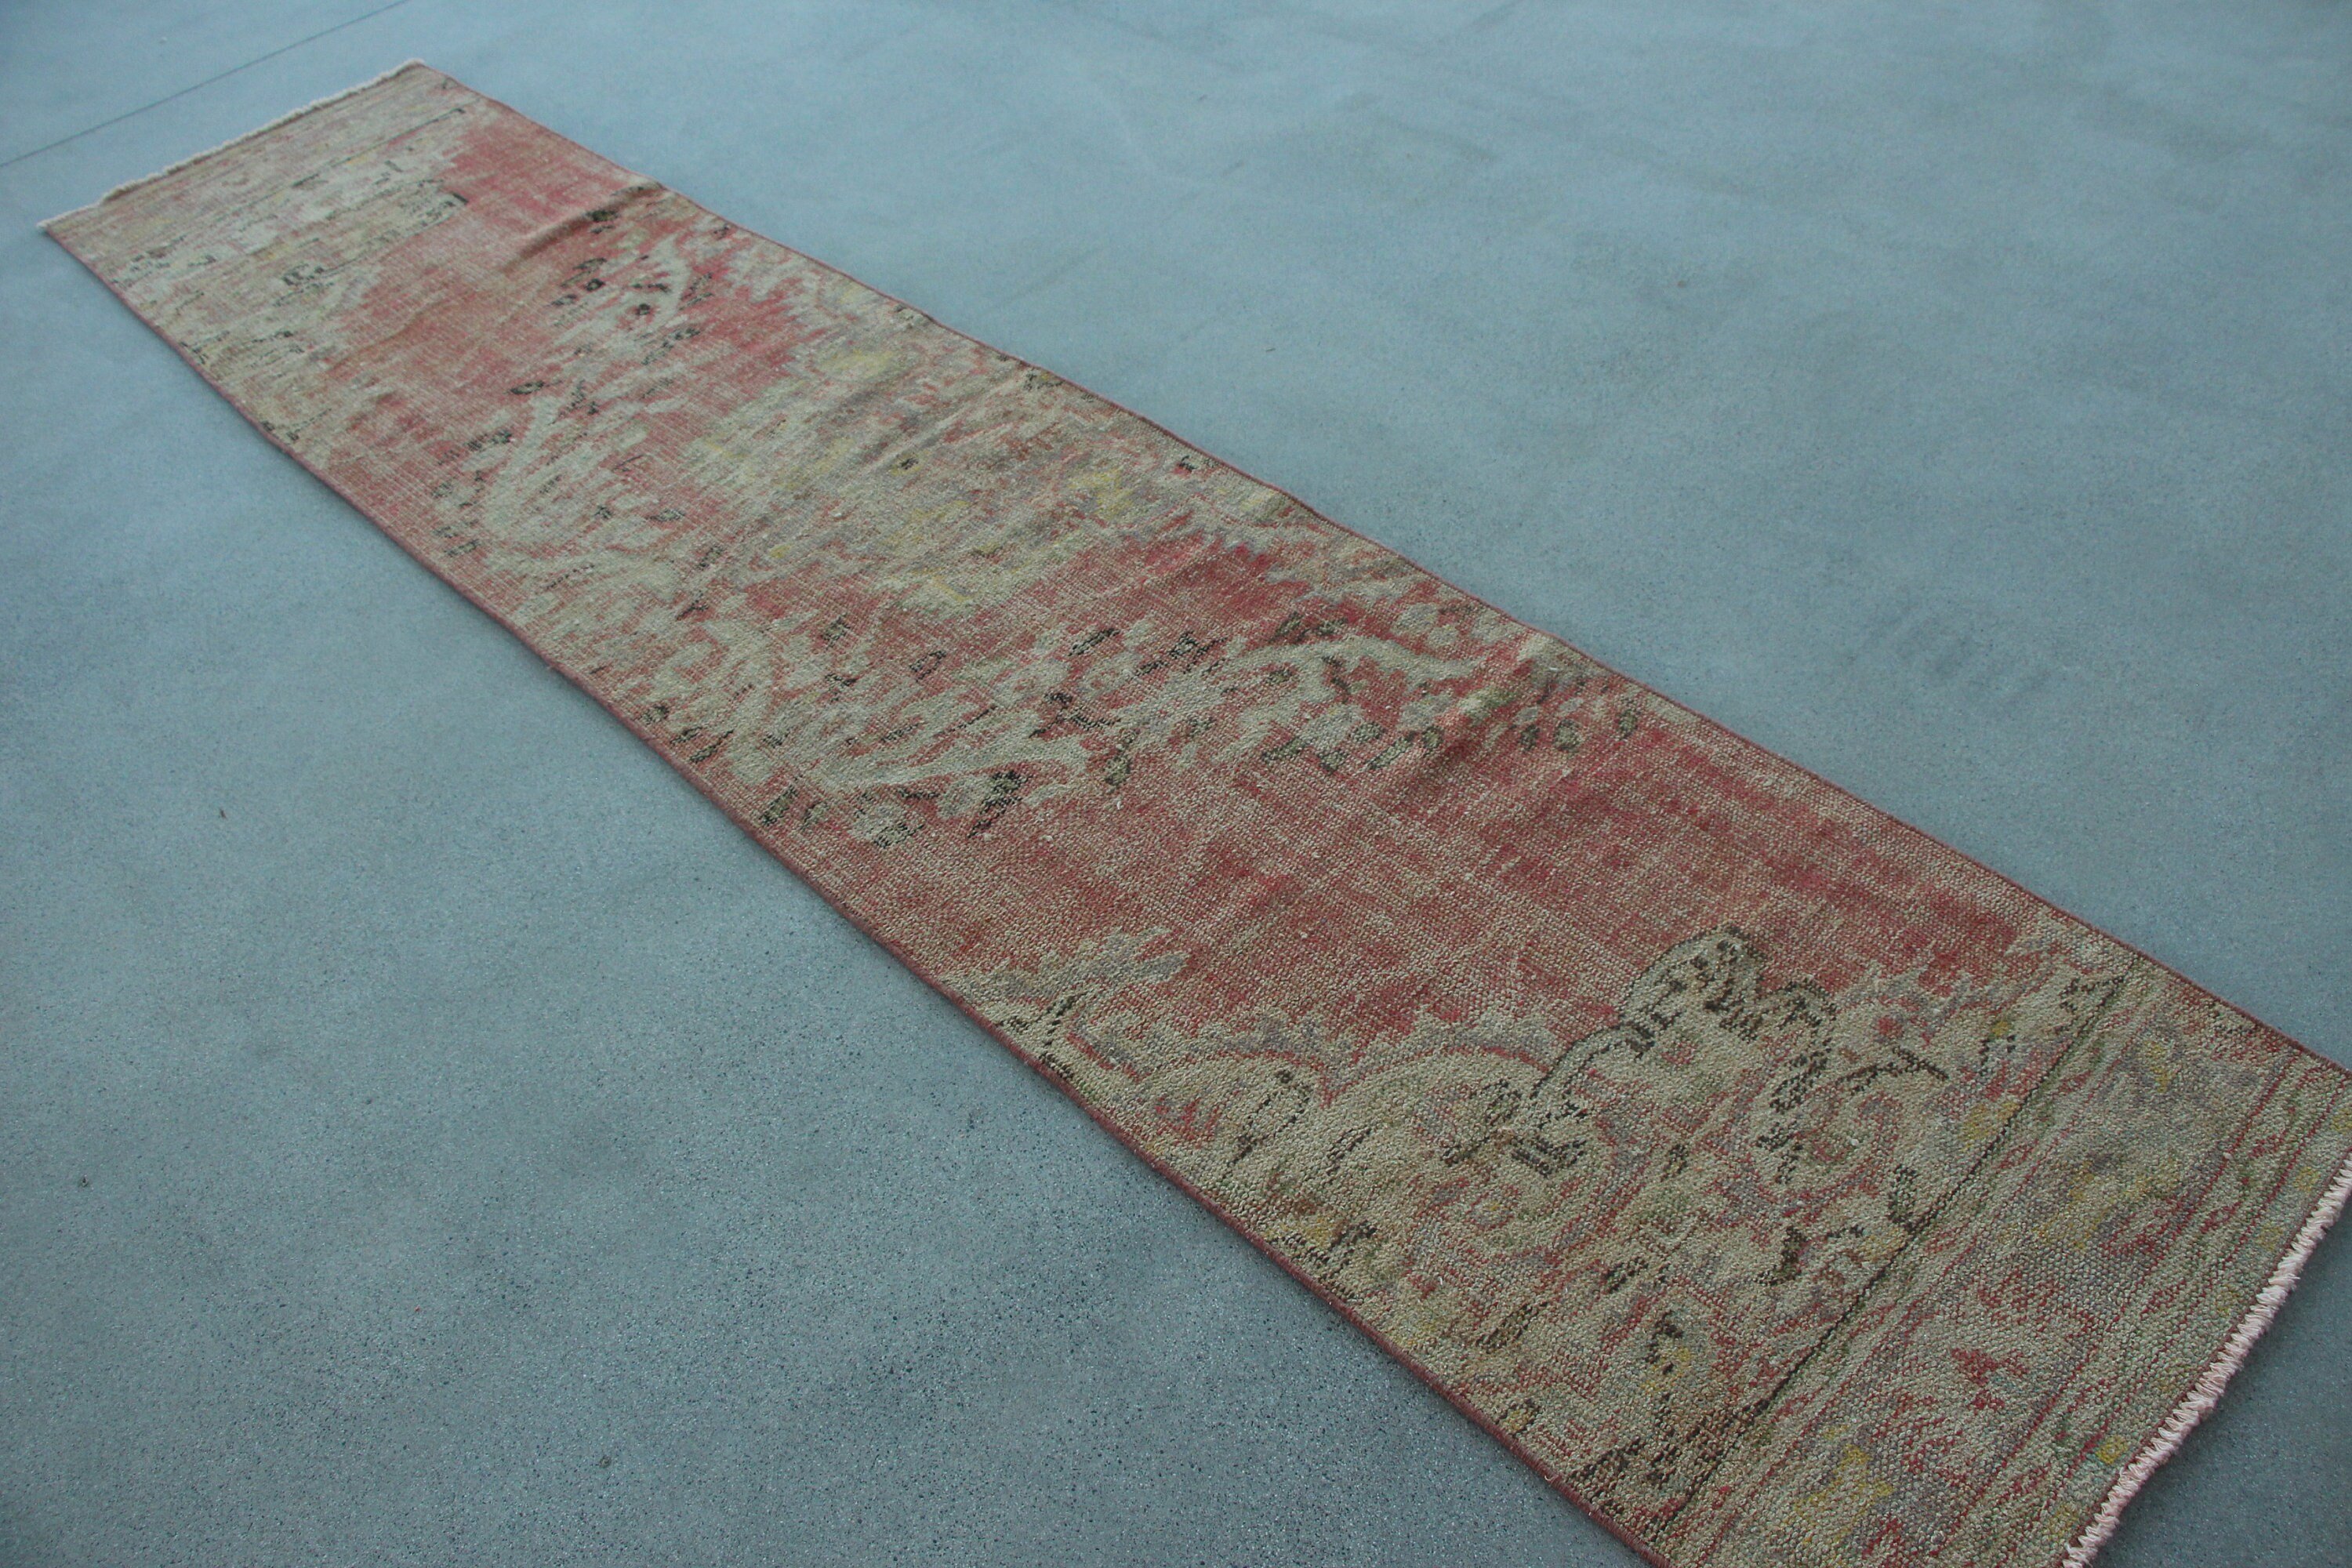 Turkish Rug, Rugs for Corridor, Vintage Rug, 2.2x10.5 ft Runner Rugs, Corridor Rug, Stair Rug, Cool Rug, Red Anatolian Rug, Bedroom Rugs